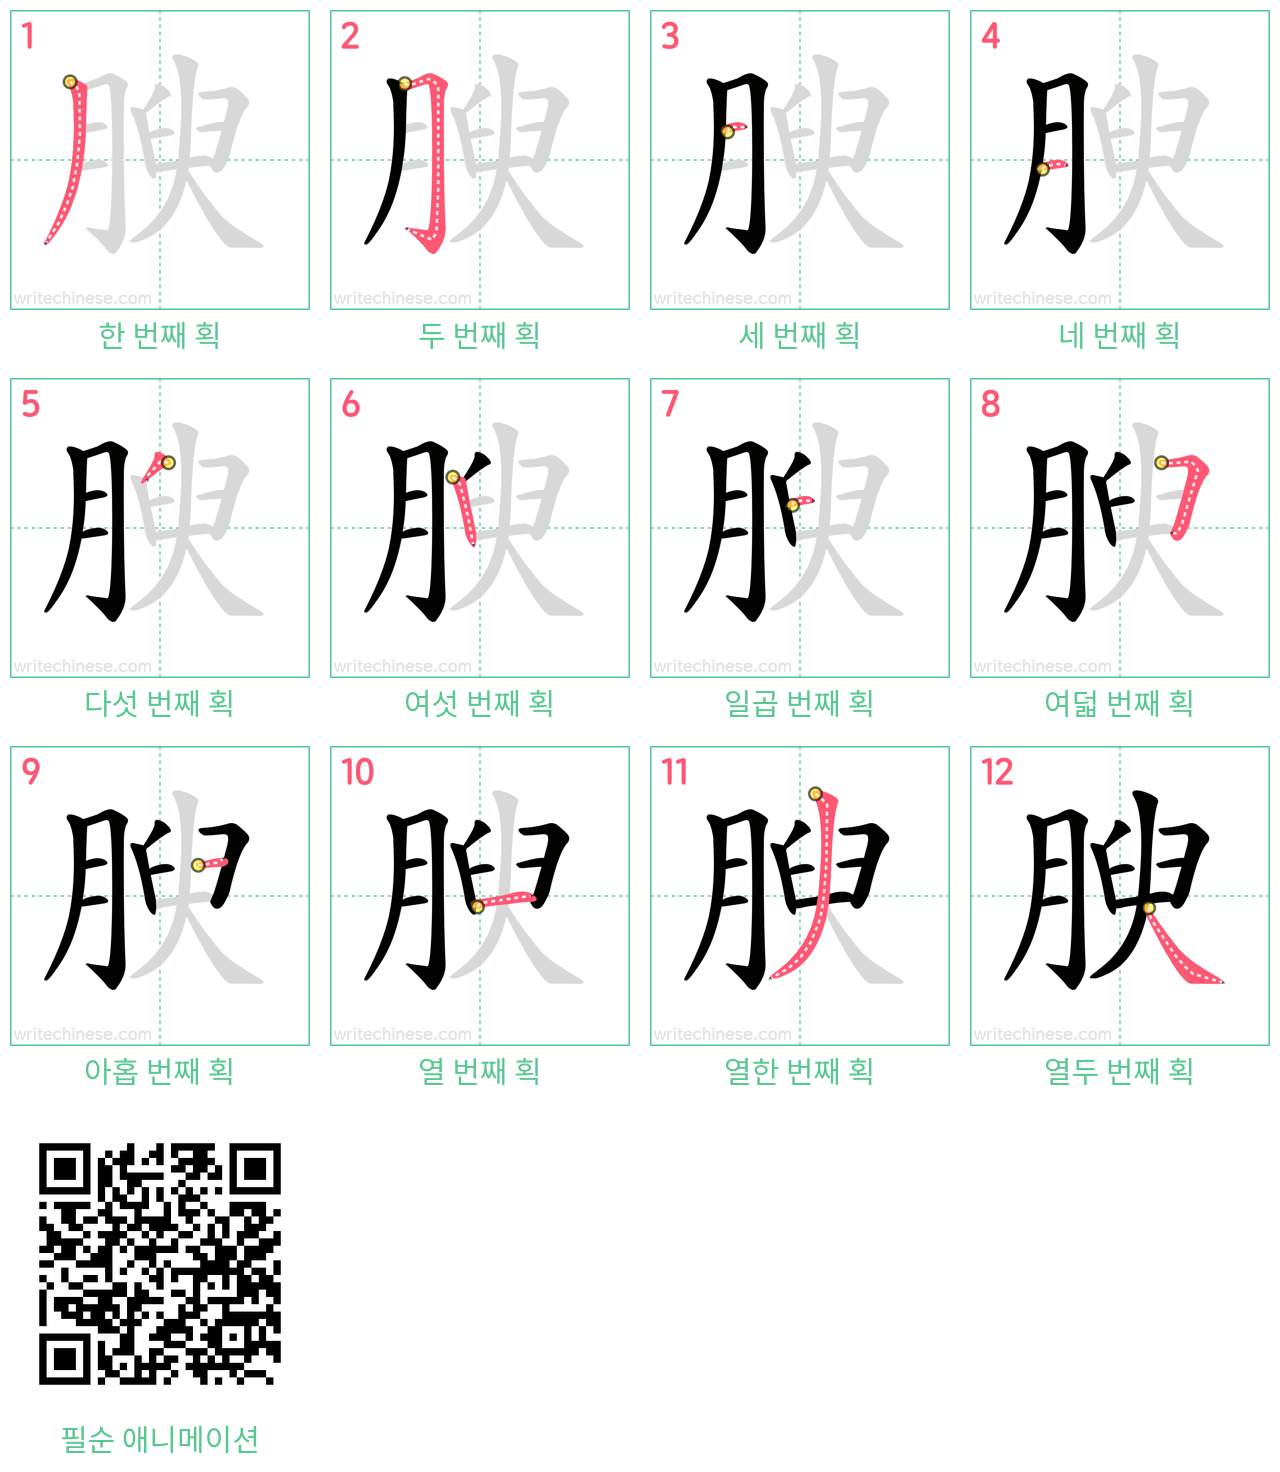 腴 step-by-step stroke order diagrams